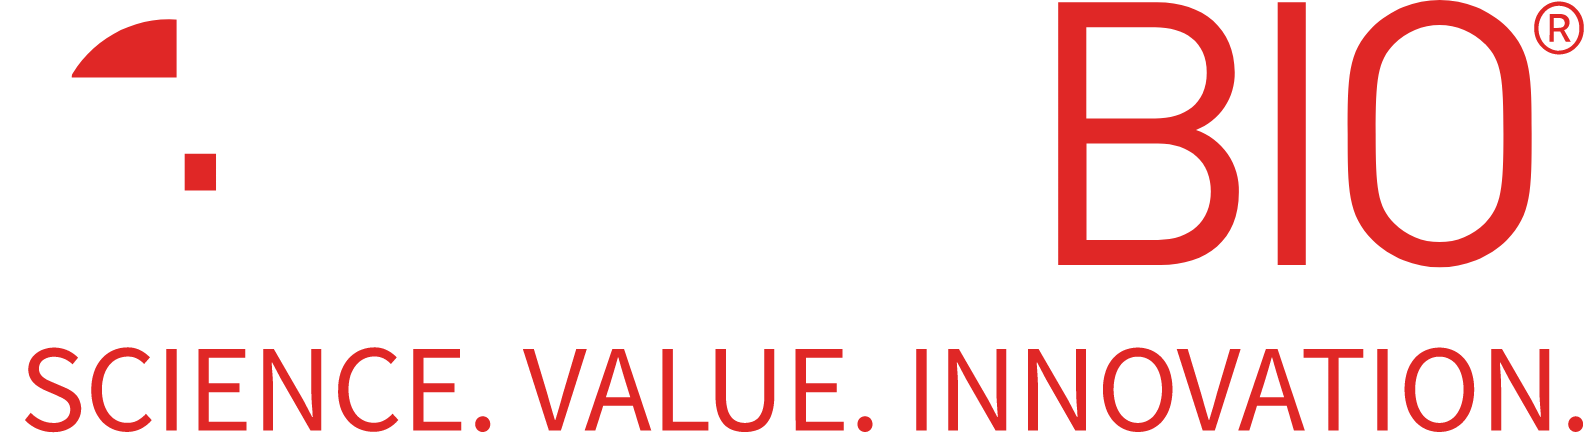 TELA Bio logo large for dark backgrounds (transparent PNG)